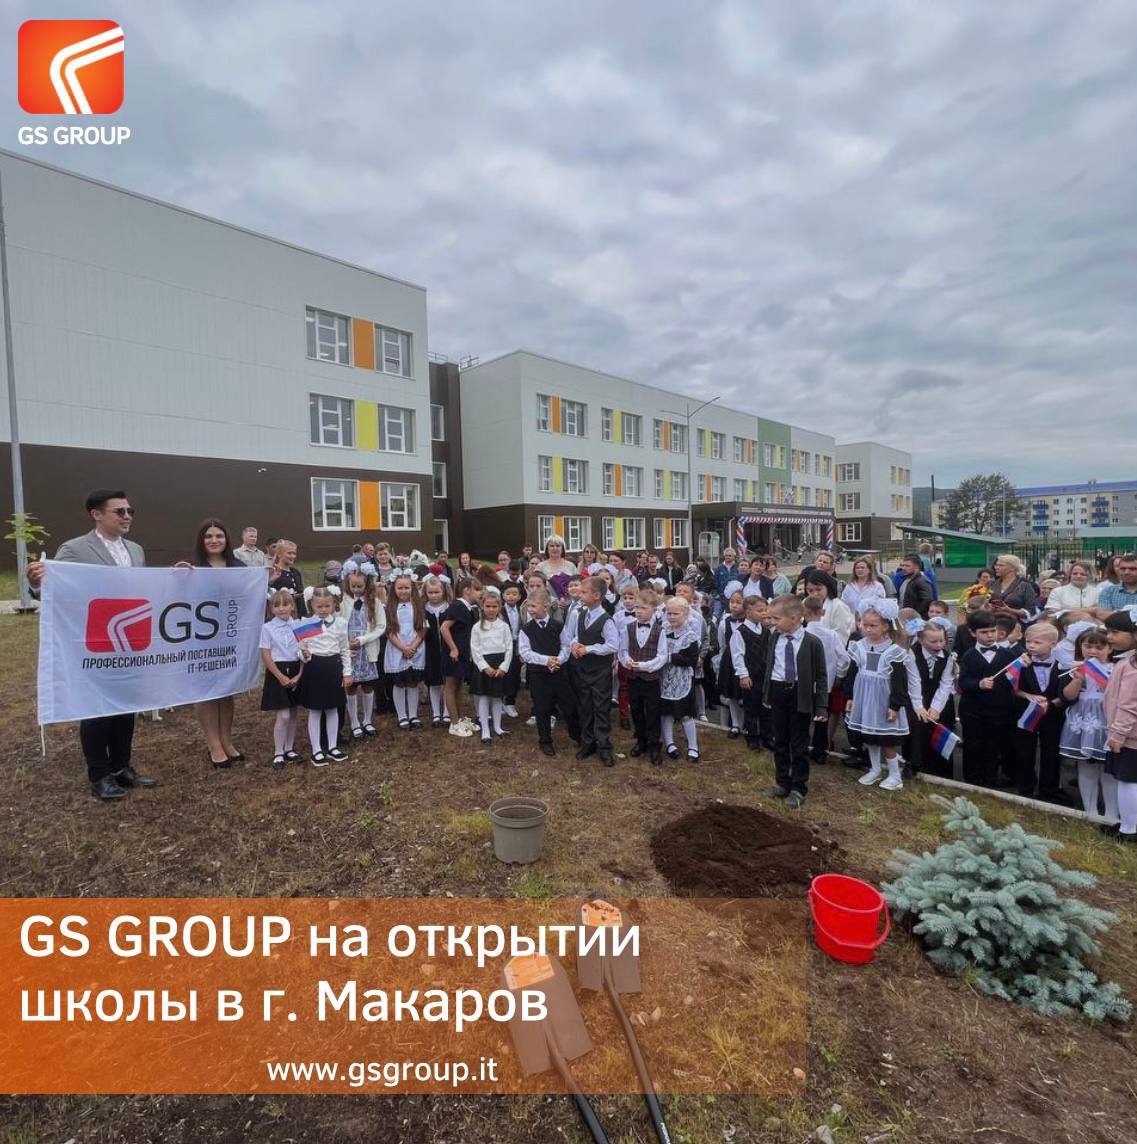 1 сентября мы приняли участие в открытии новой школы в г. Макаров!